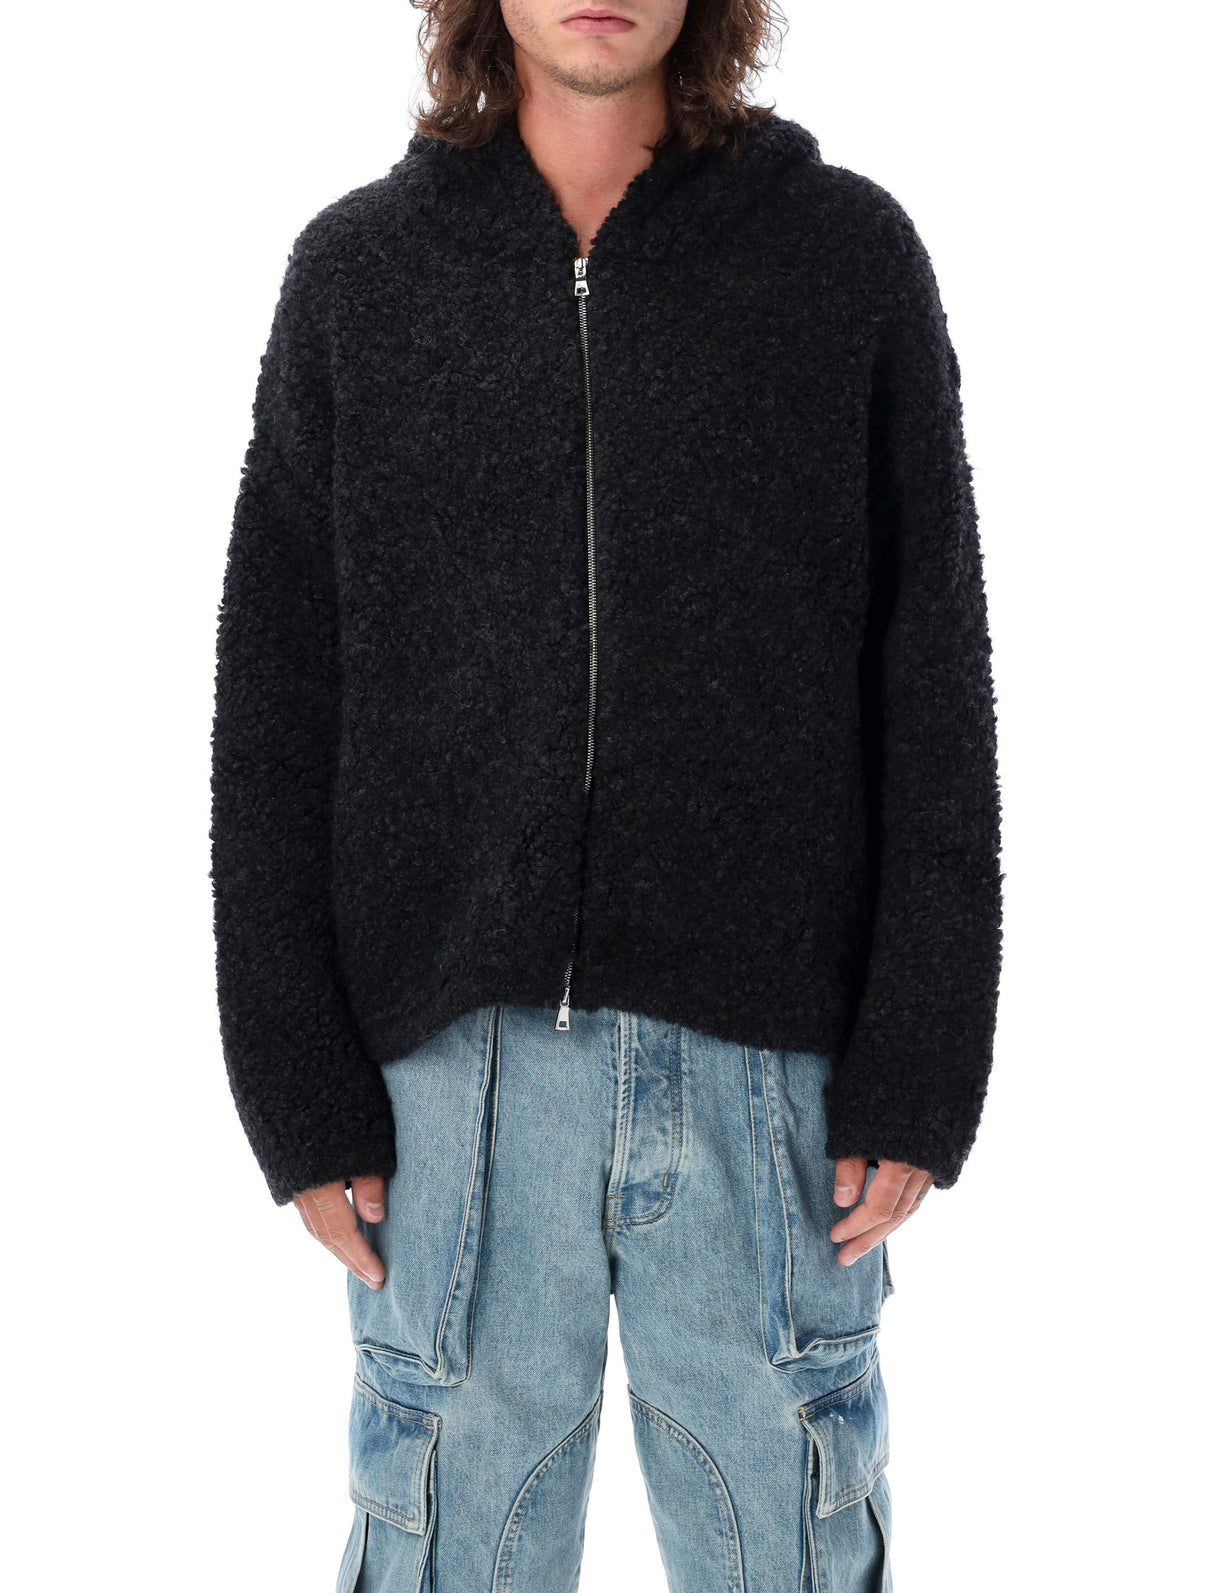 NAHMIAS Men's Black Miracle Academy Fur Hooded Jacket